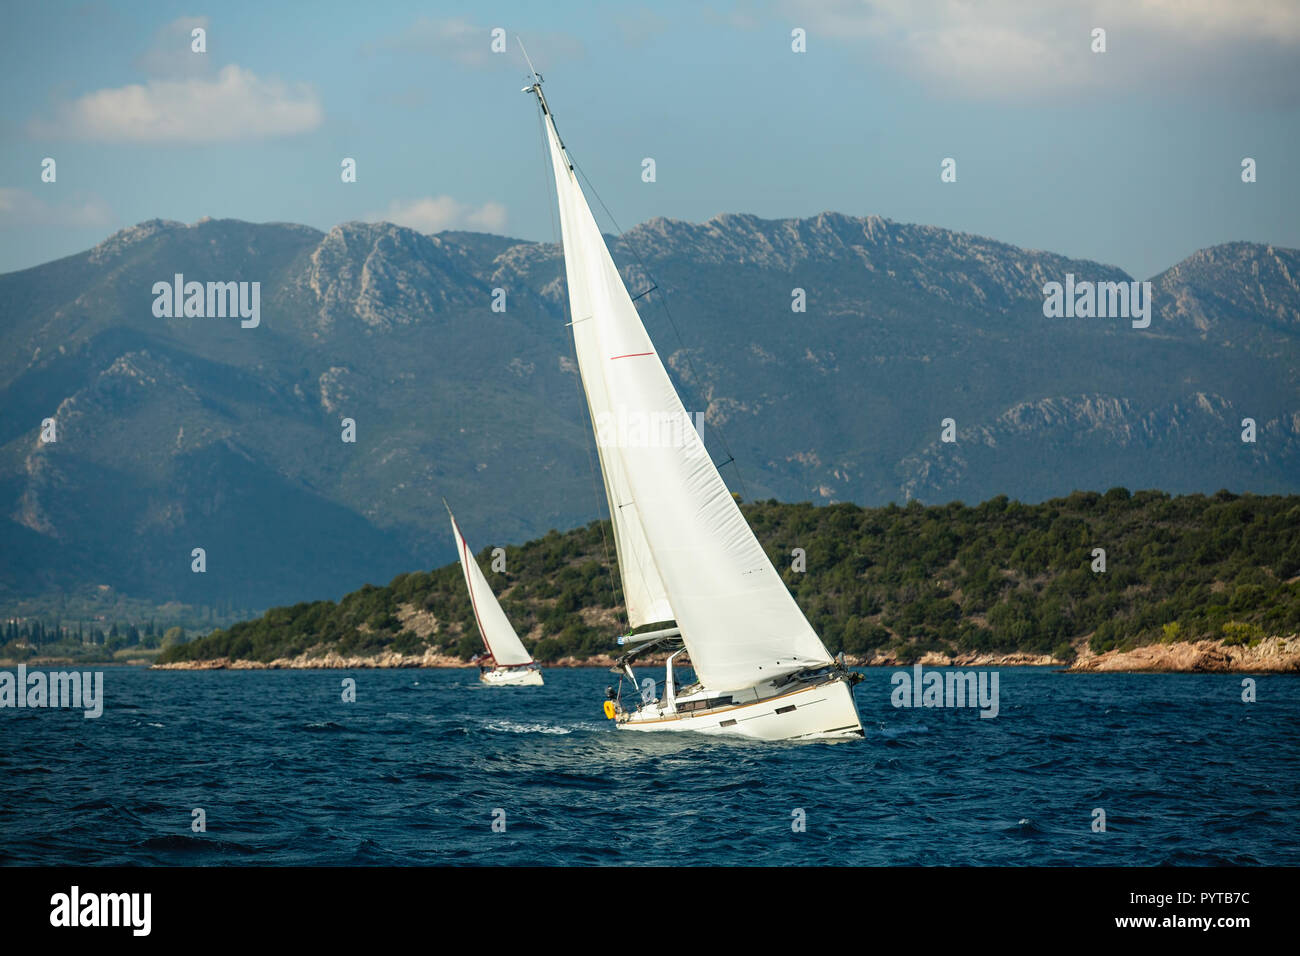 Location de bateaux à voiles blanches près des rochers dans la mer Egée. Régate de voile. Banque D'Images